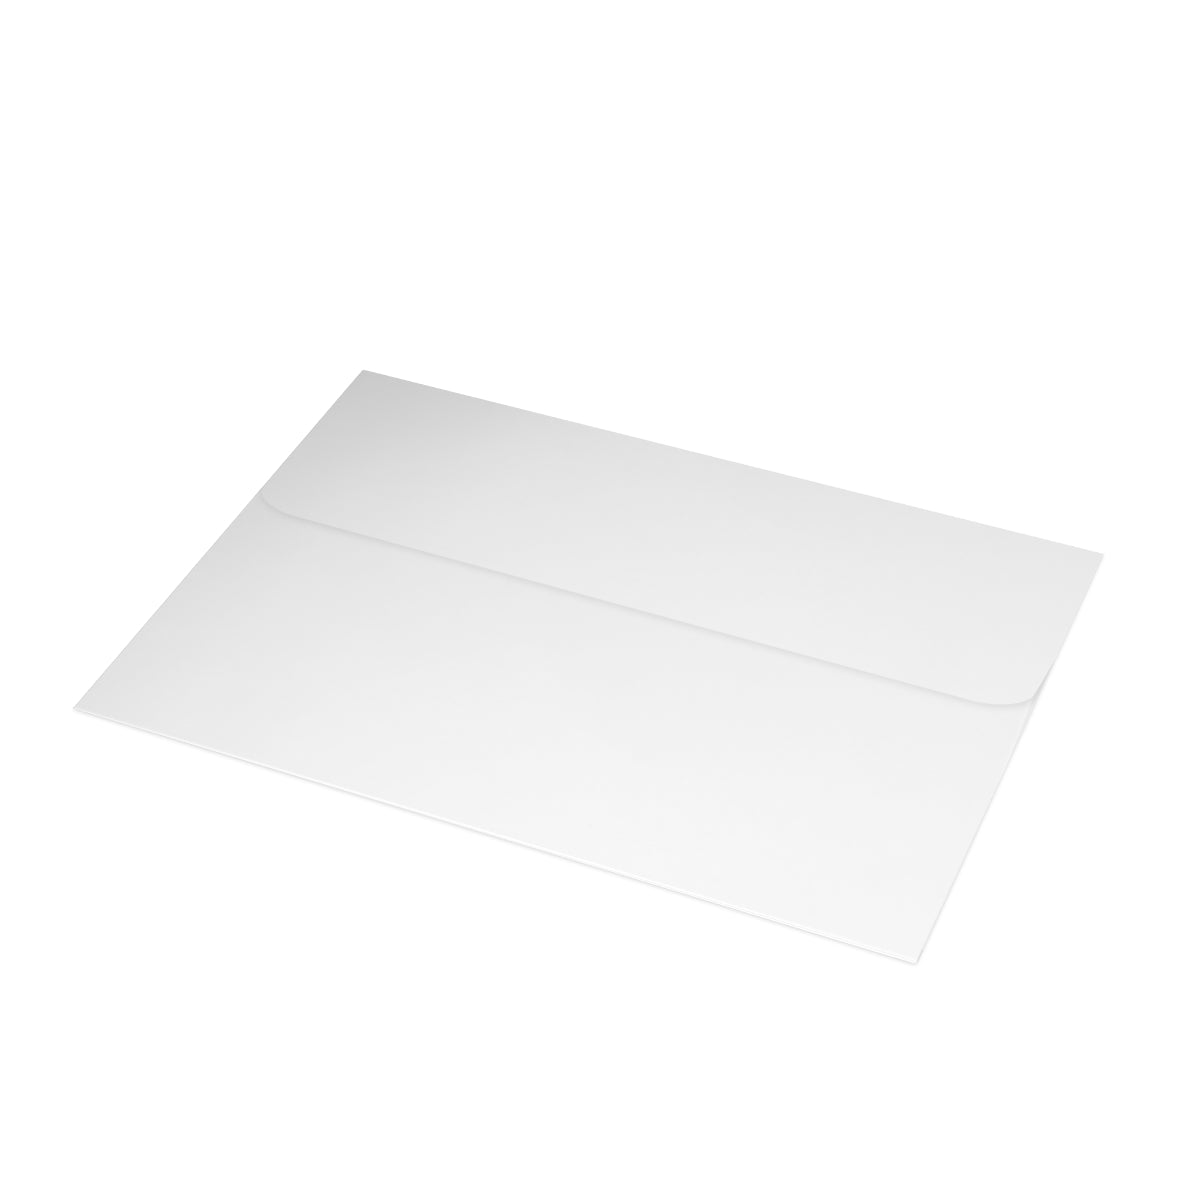 Cartes de notes mates pliées Austin + enveloppes (10 pièces)